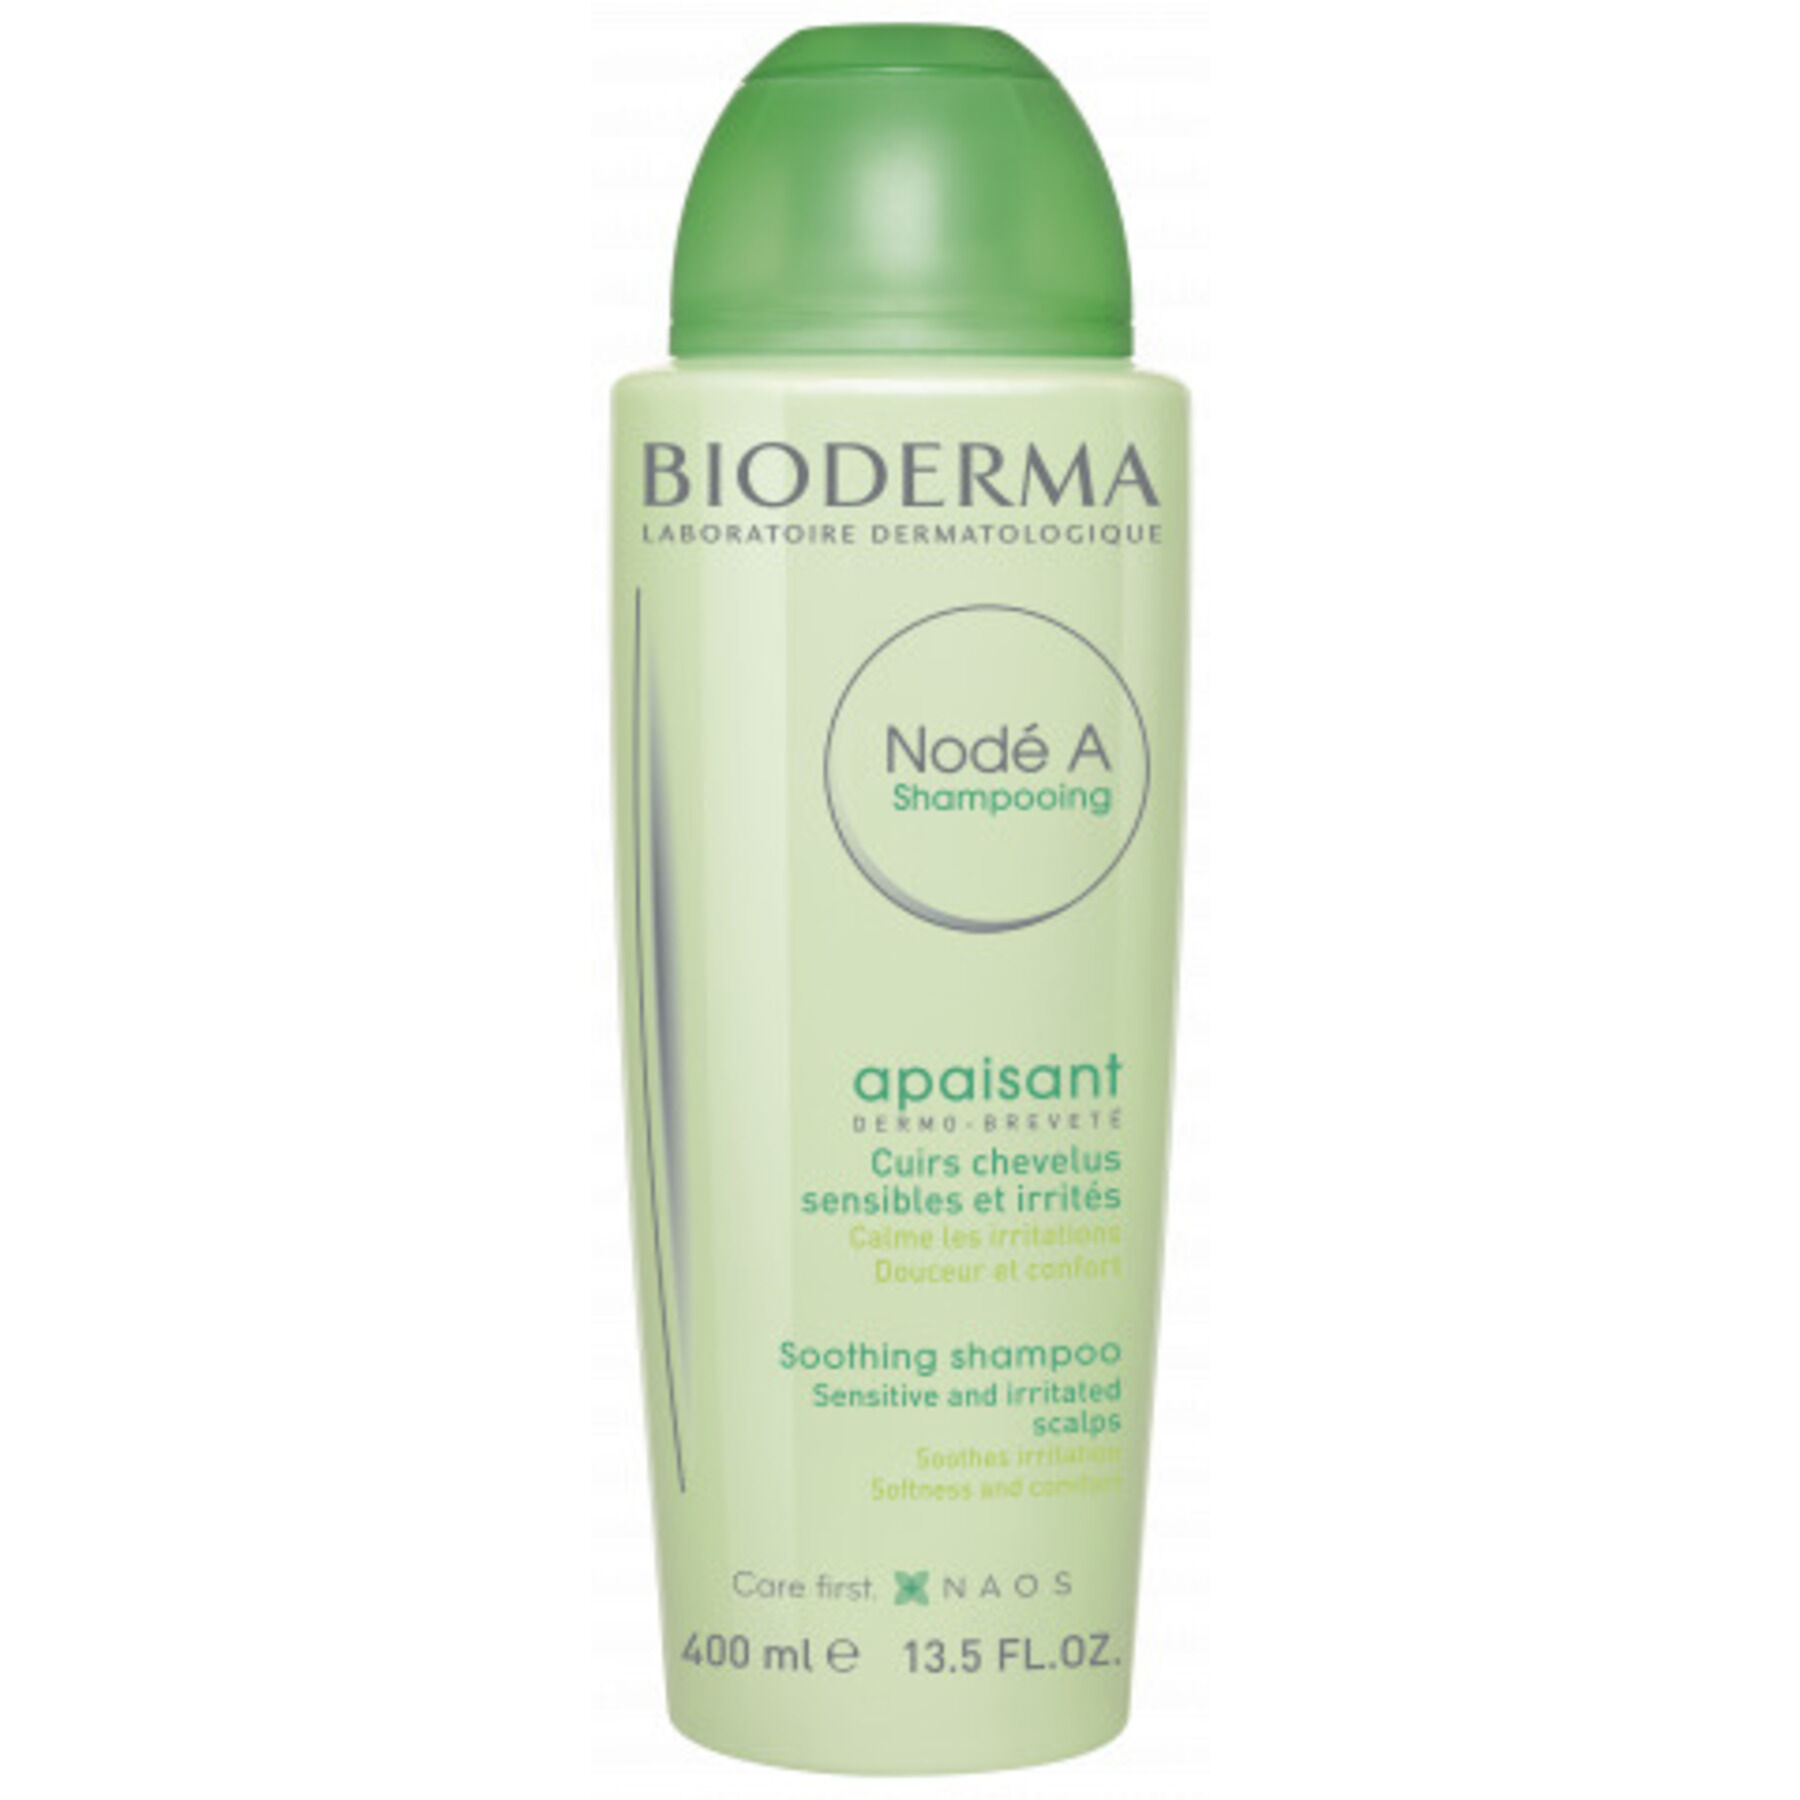 BIODERMA ITALIA Srl Bioderma Nodè A shampoo lenitivo delicato (400 ml)